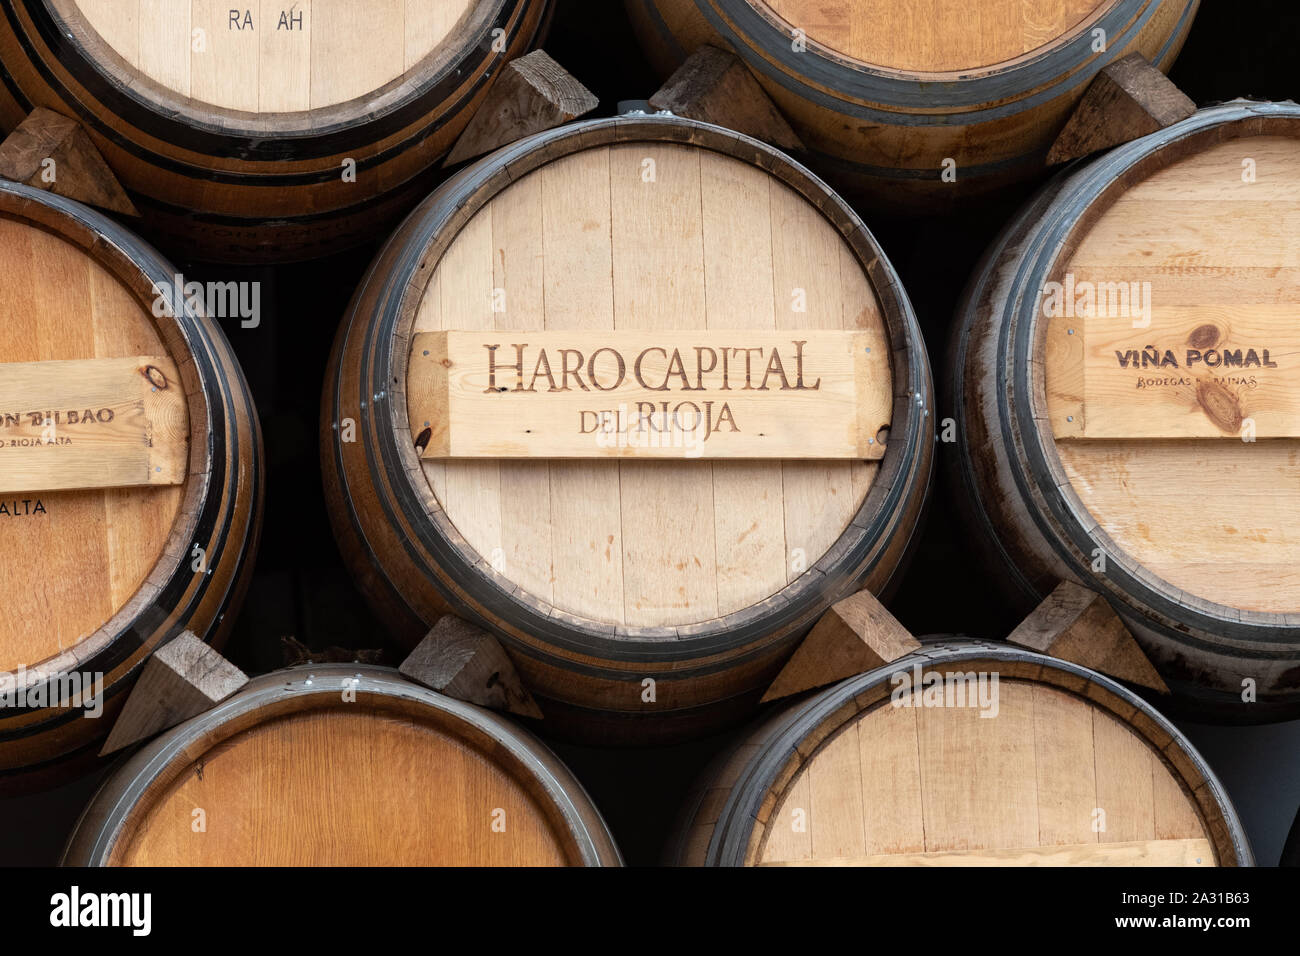 Capital de Rioja Haro sur le vin le baril sur l'affichage à Haro, Espagne, Europe Banque D'Images